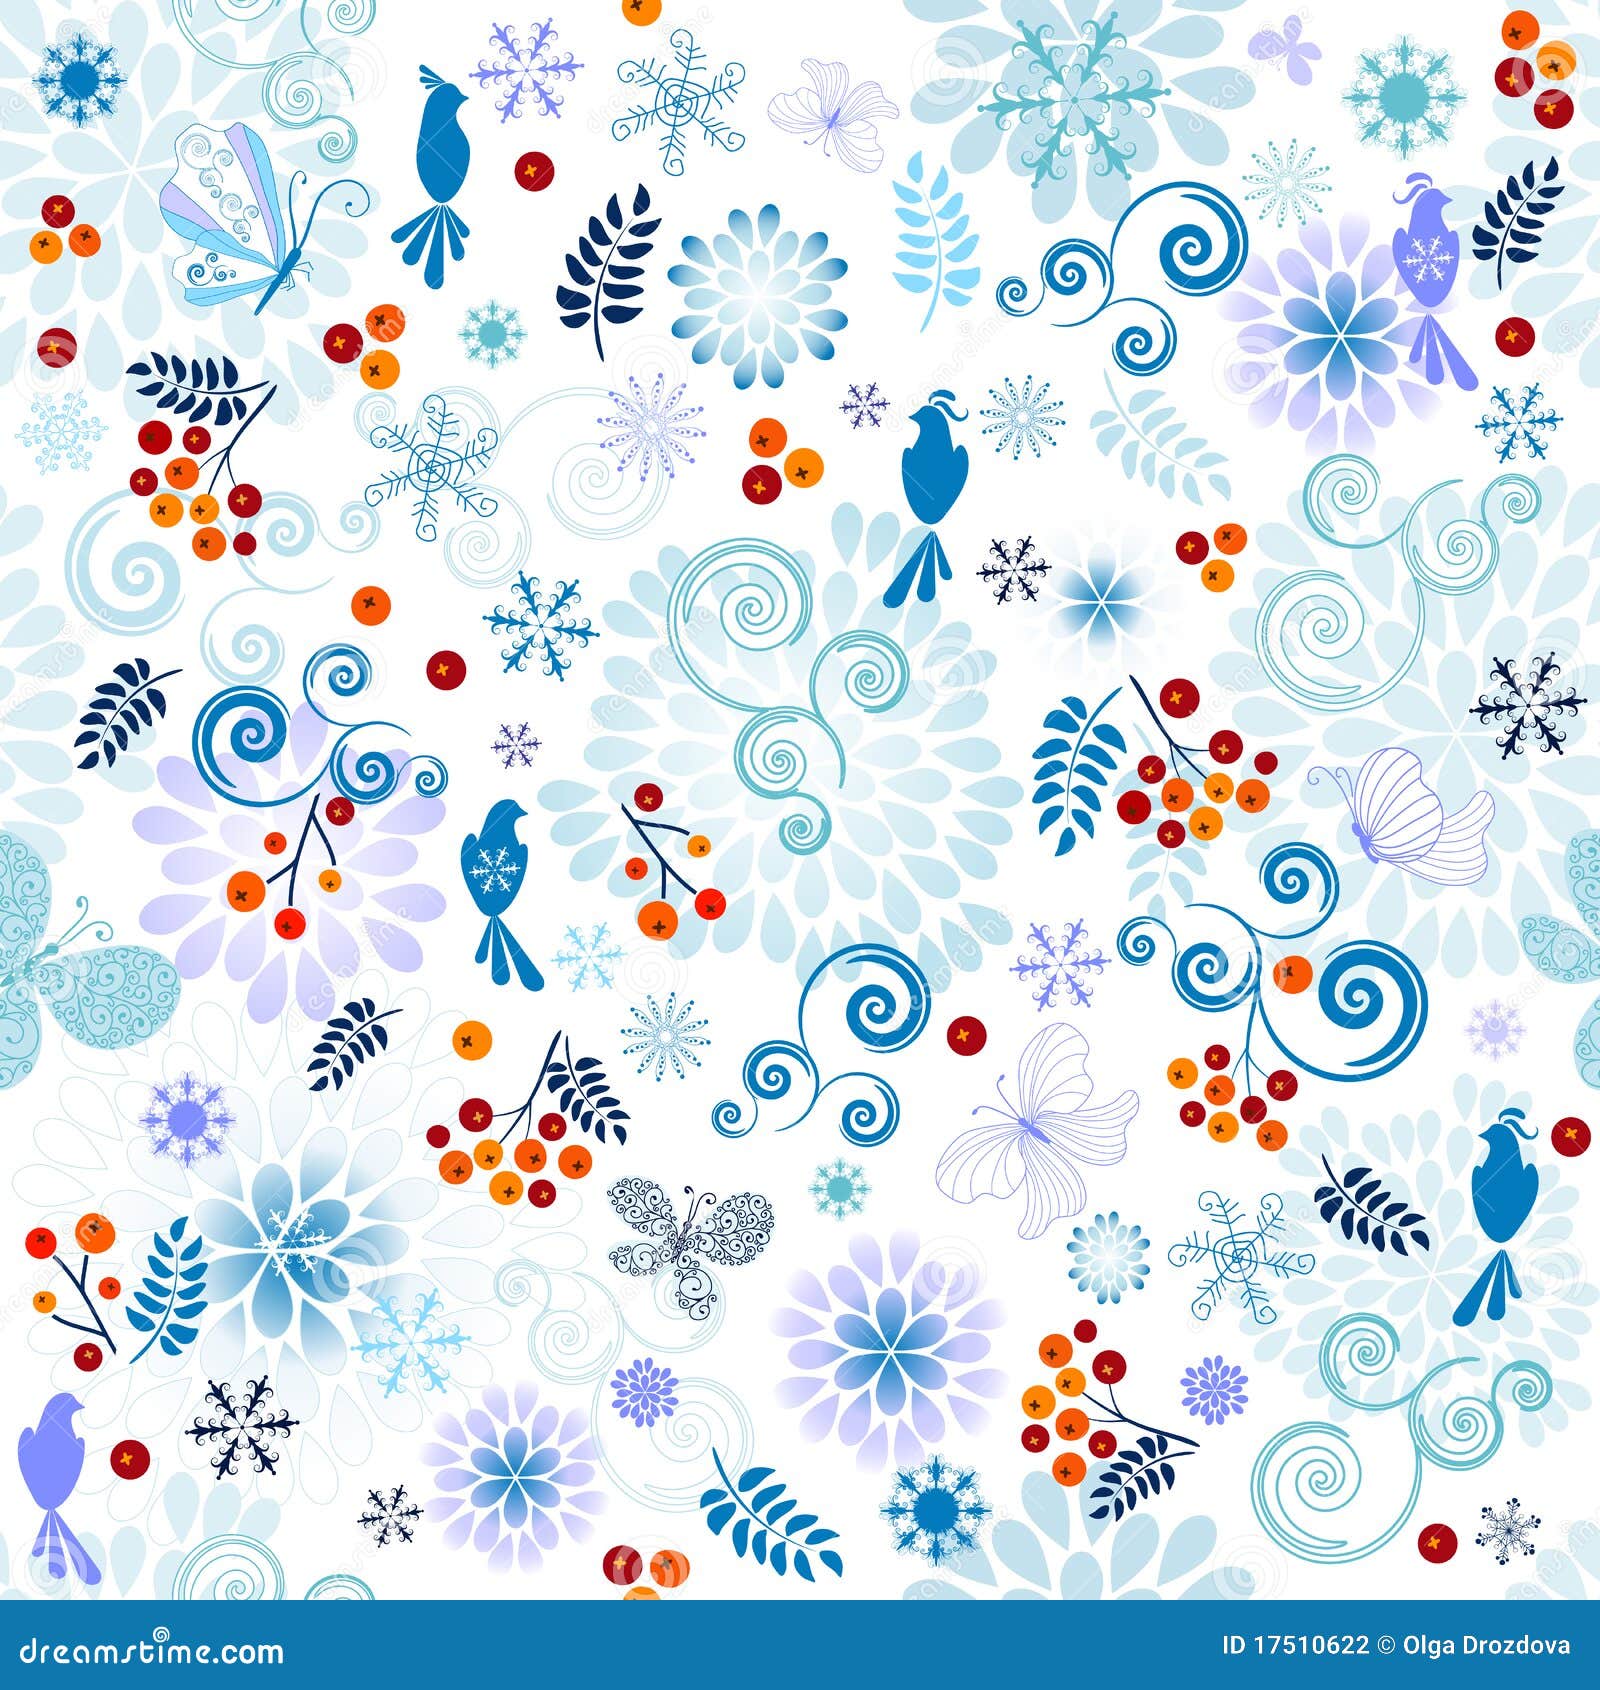 winter effortless pattern